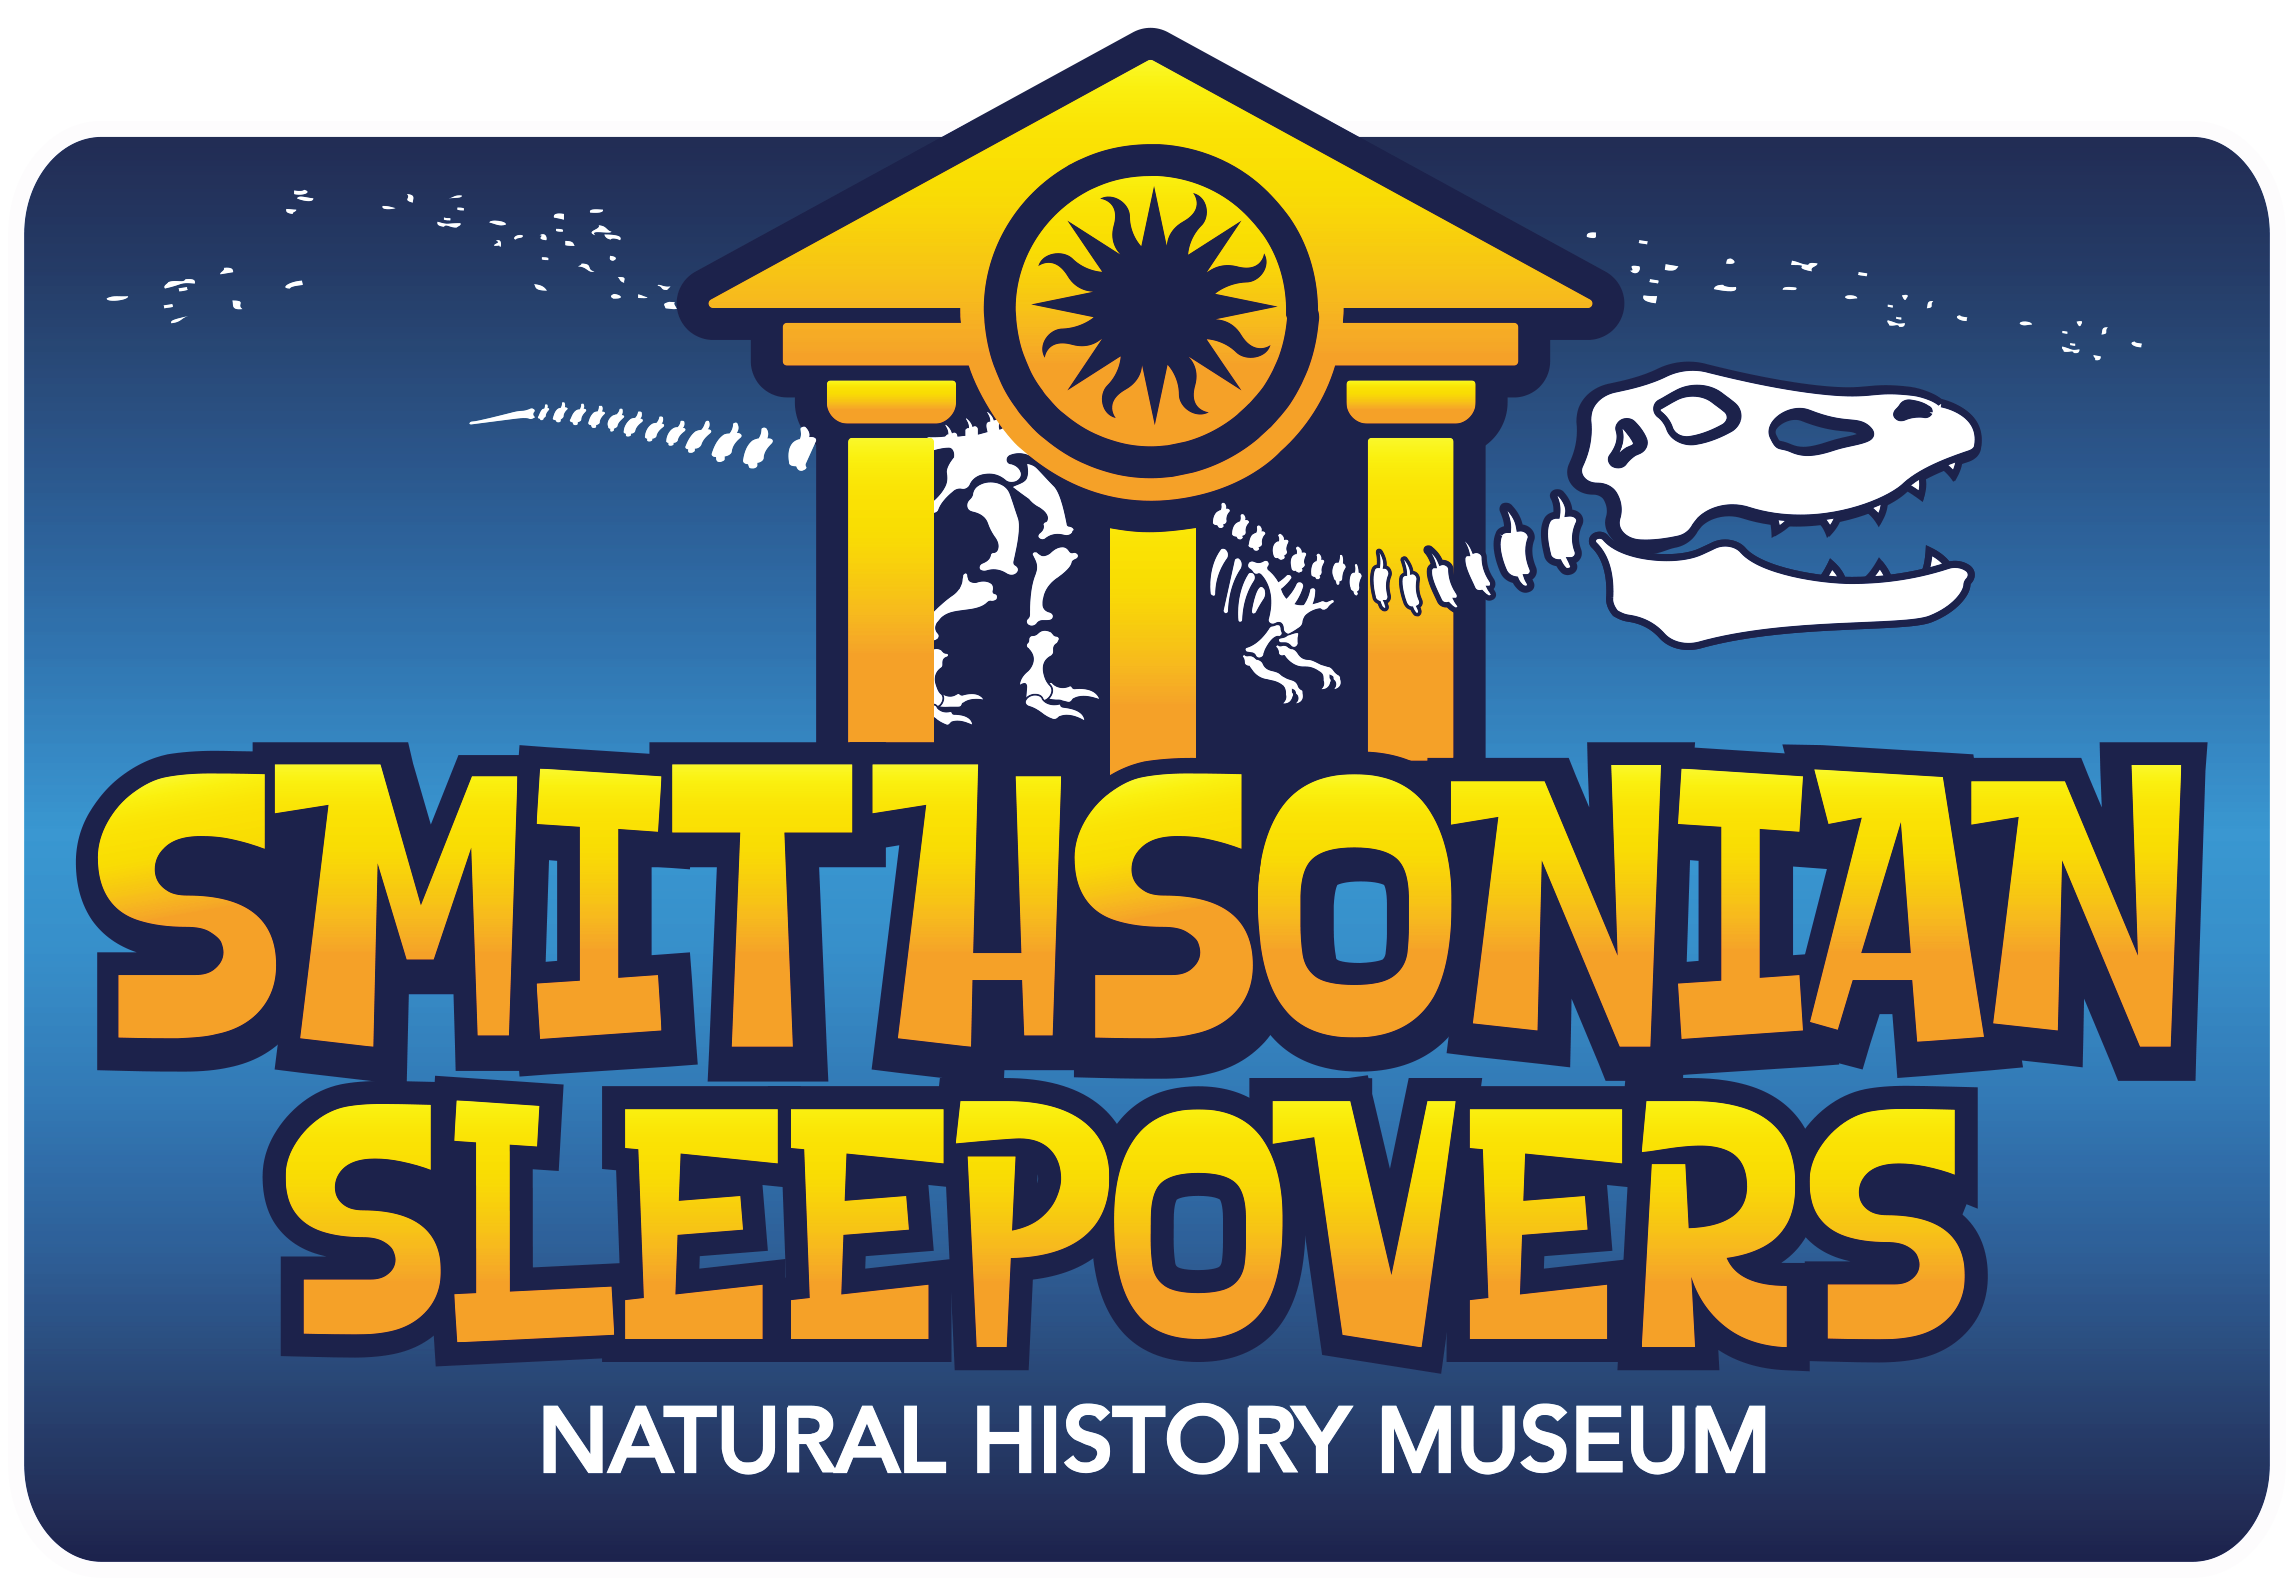 Smithsonian Sleepovers